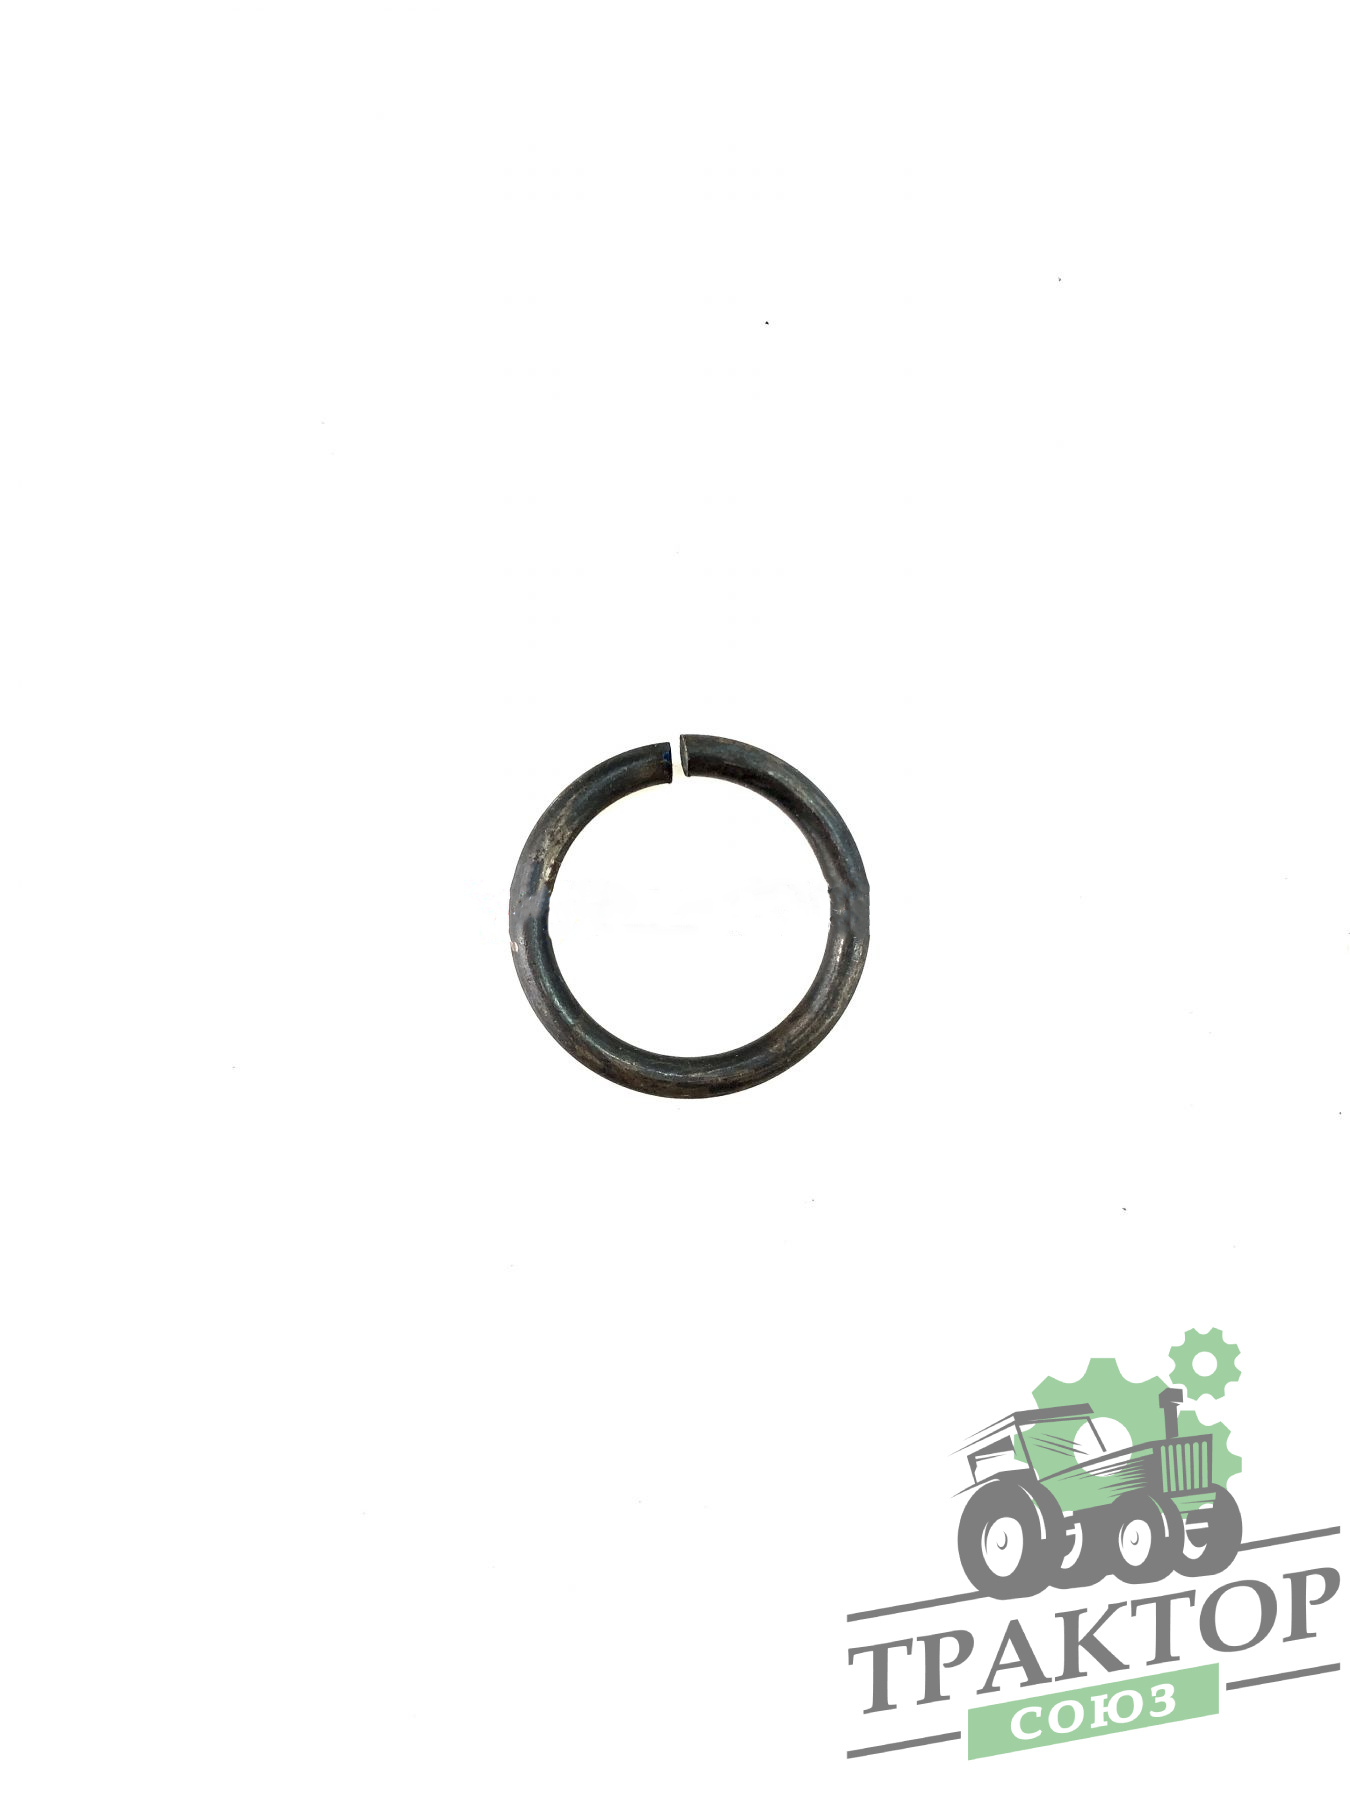 Кольцо стопорное оси собачки Т-40 54-05-436